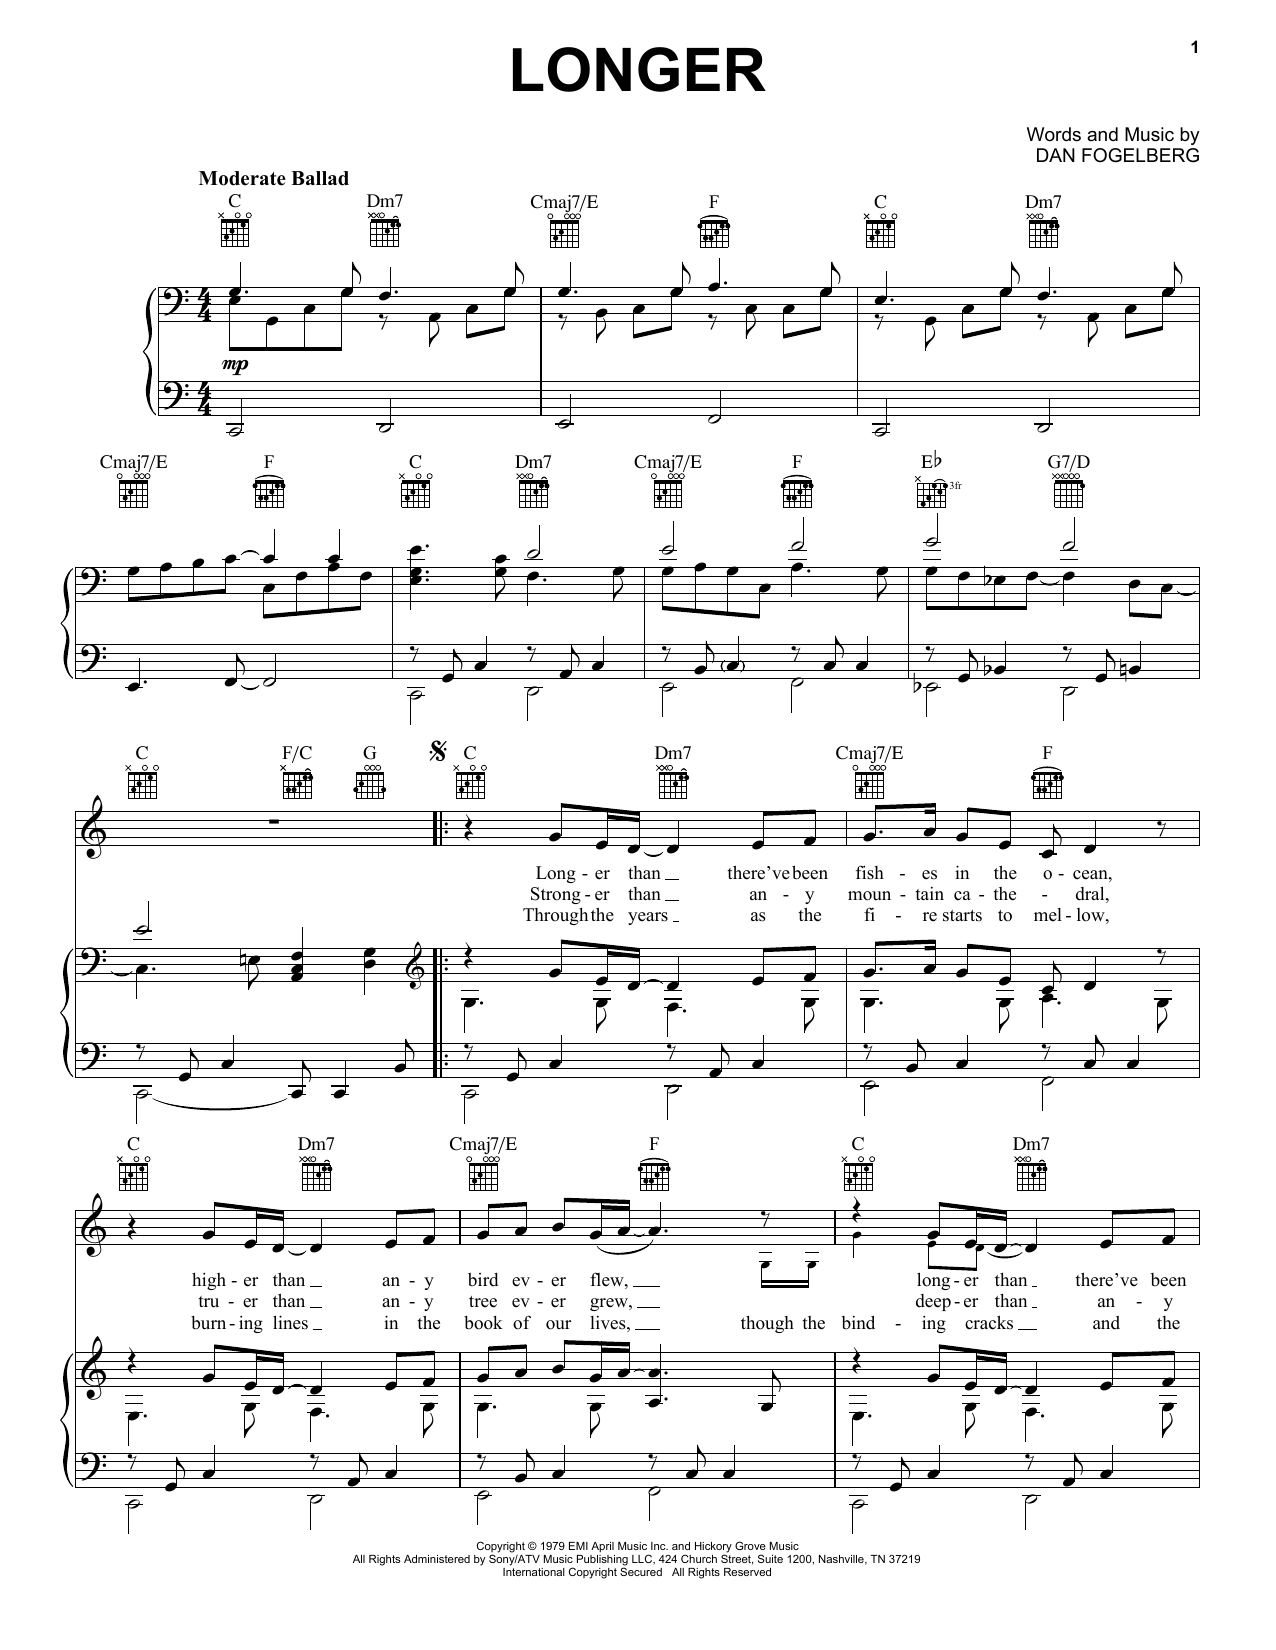 Dan Fogelberg Longer Sheet Music Notes & Chords for Guitar Tab - Download or Print PDF